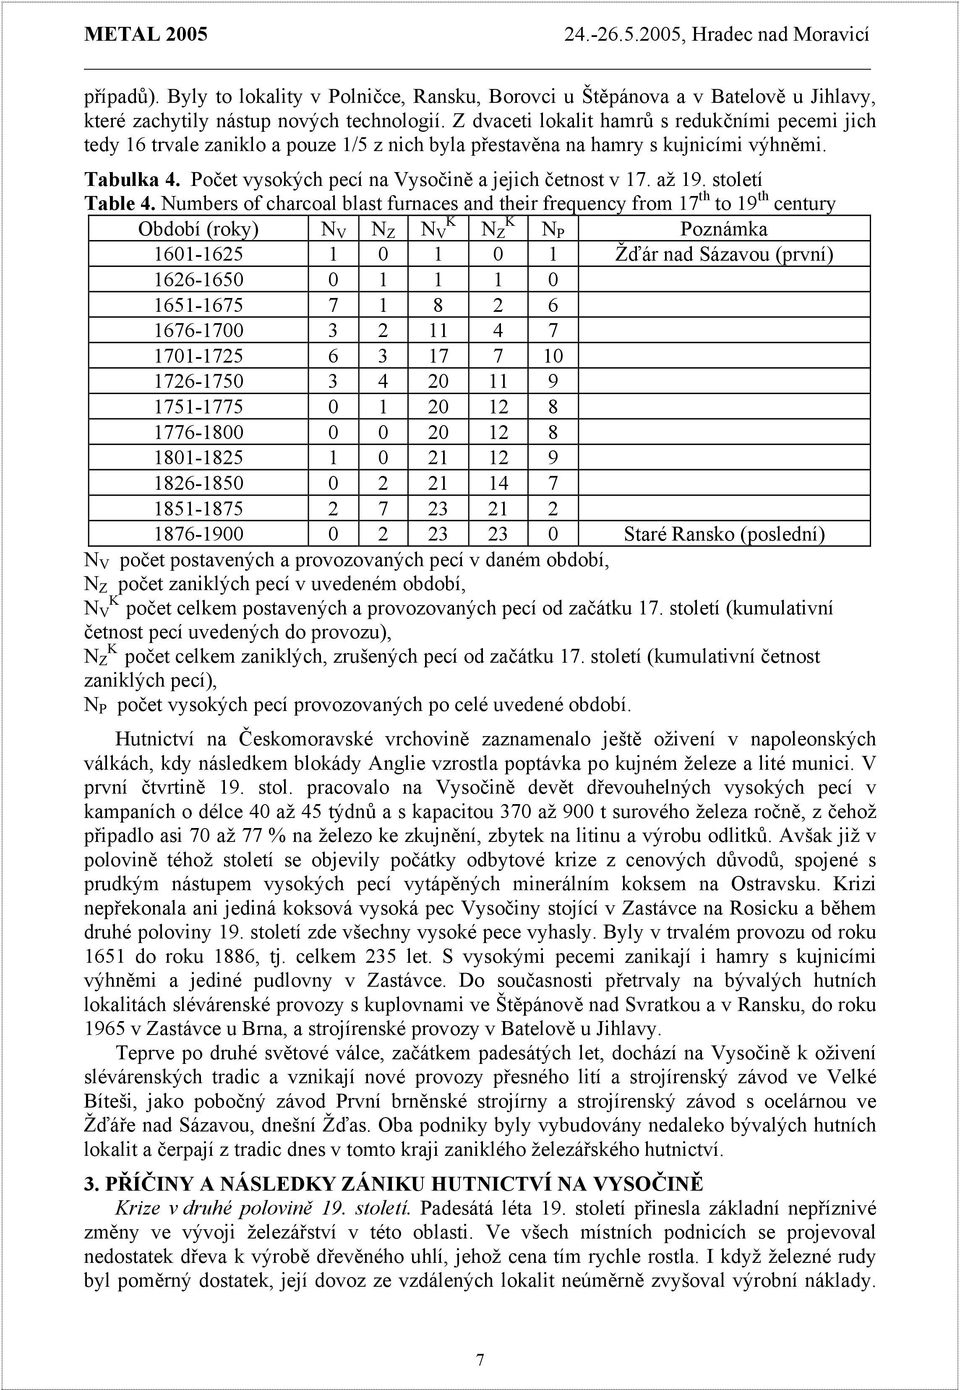 Počet vysokých pecí na Vysočině a jejich četnost v 17. až 19. století Table 4.